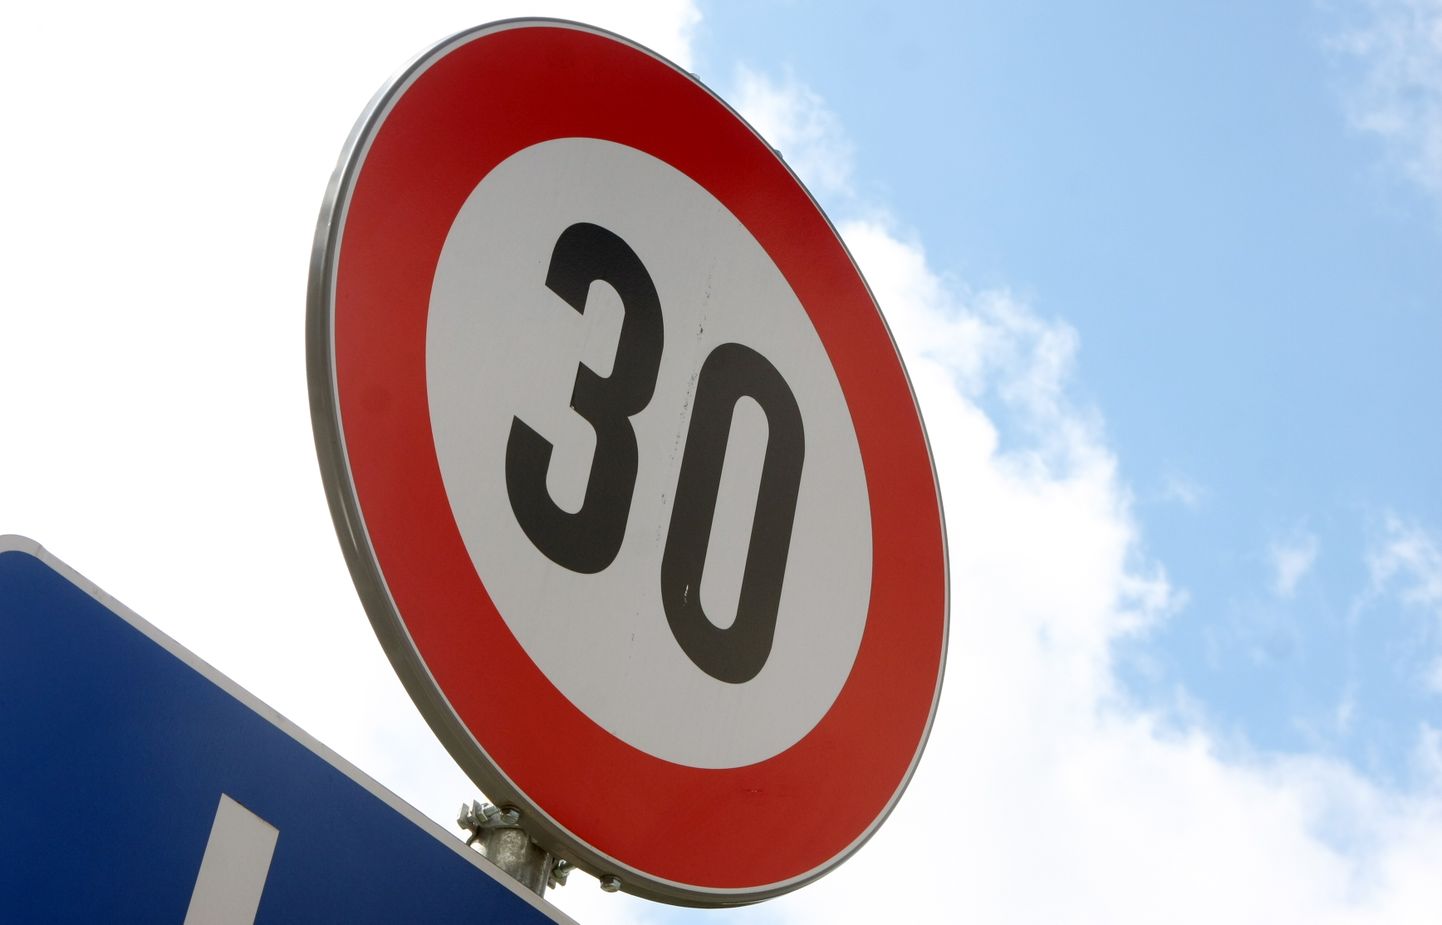 Ceļa zīme "30".